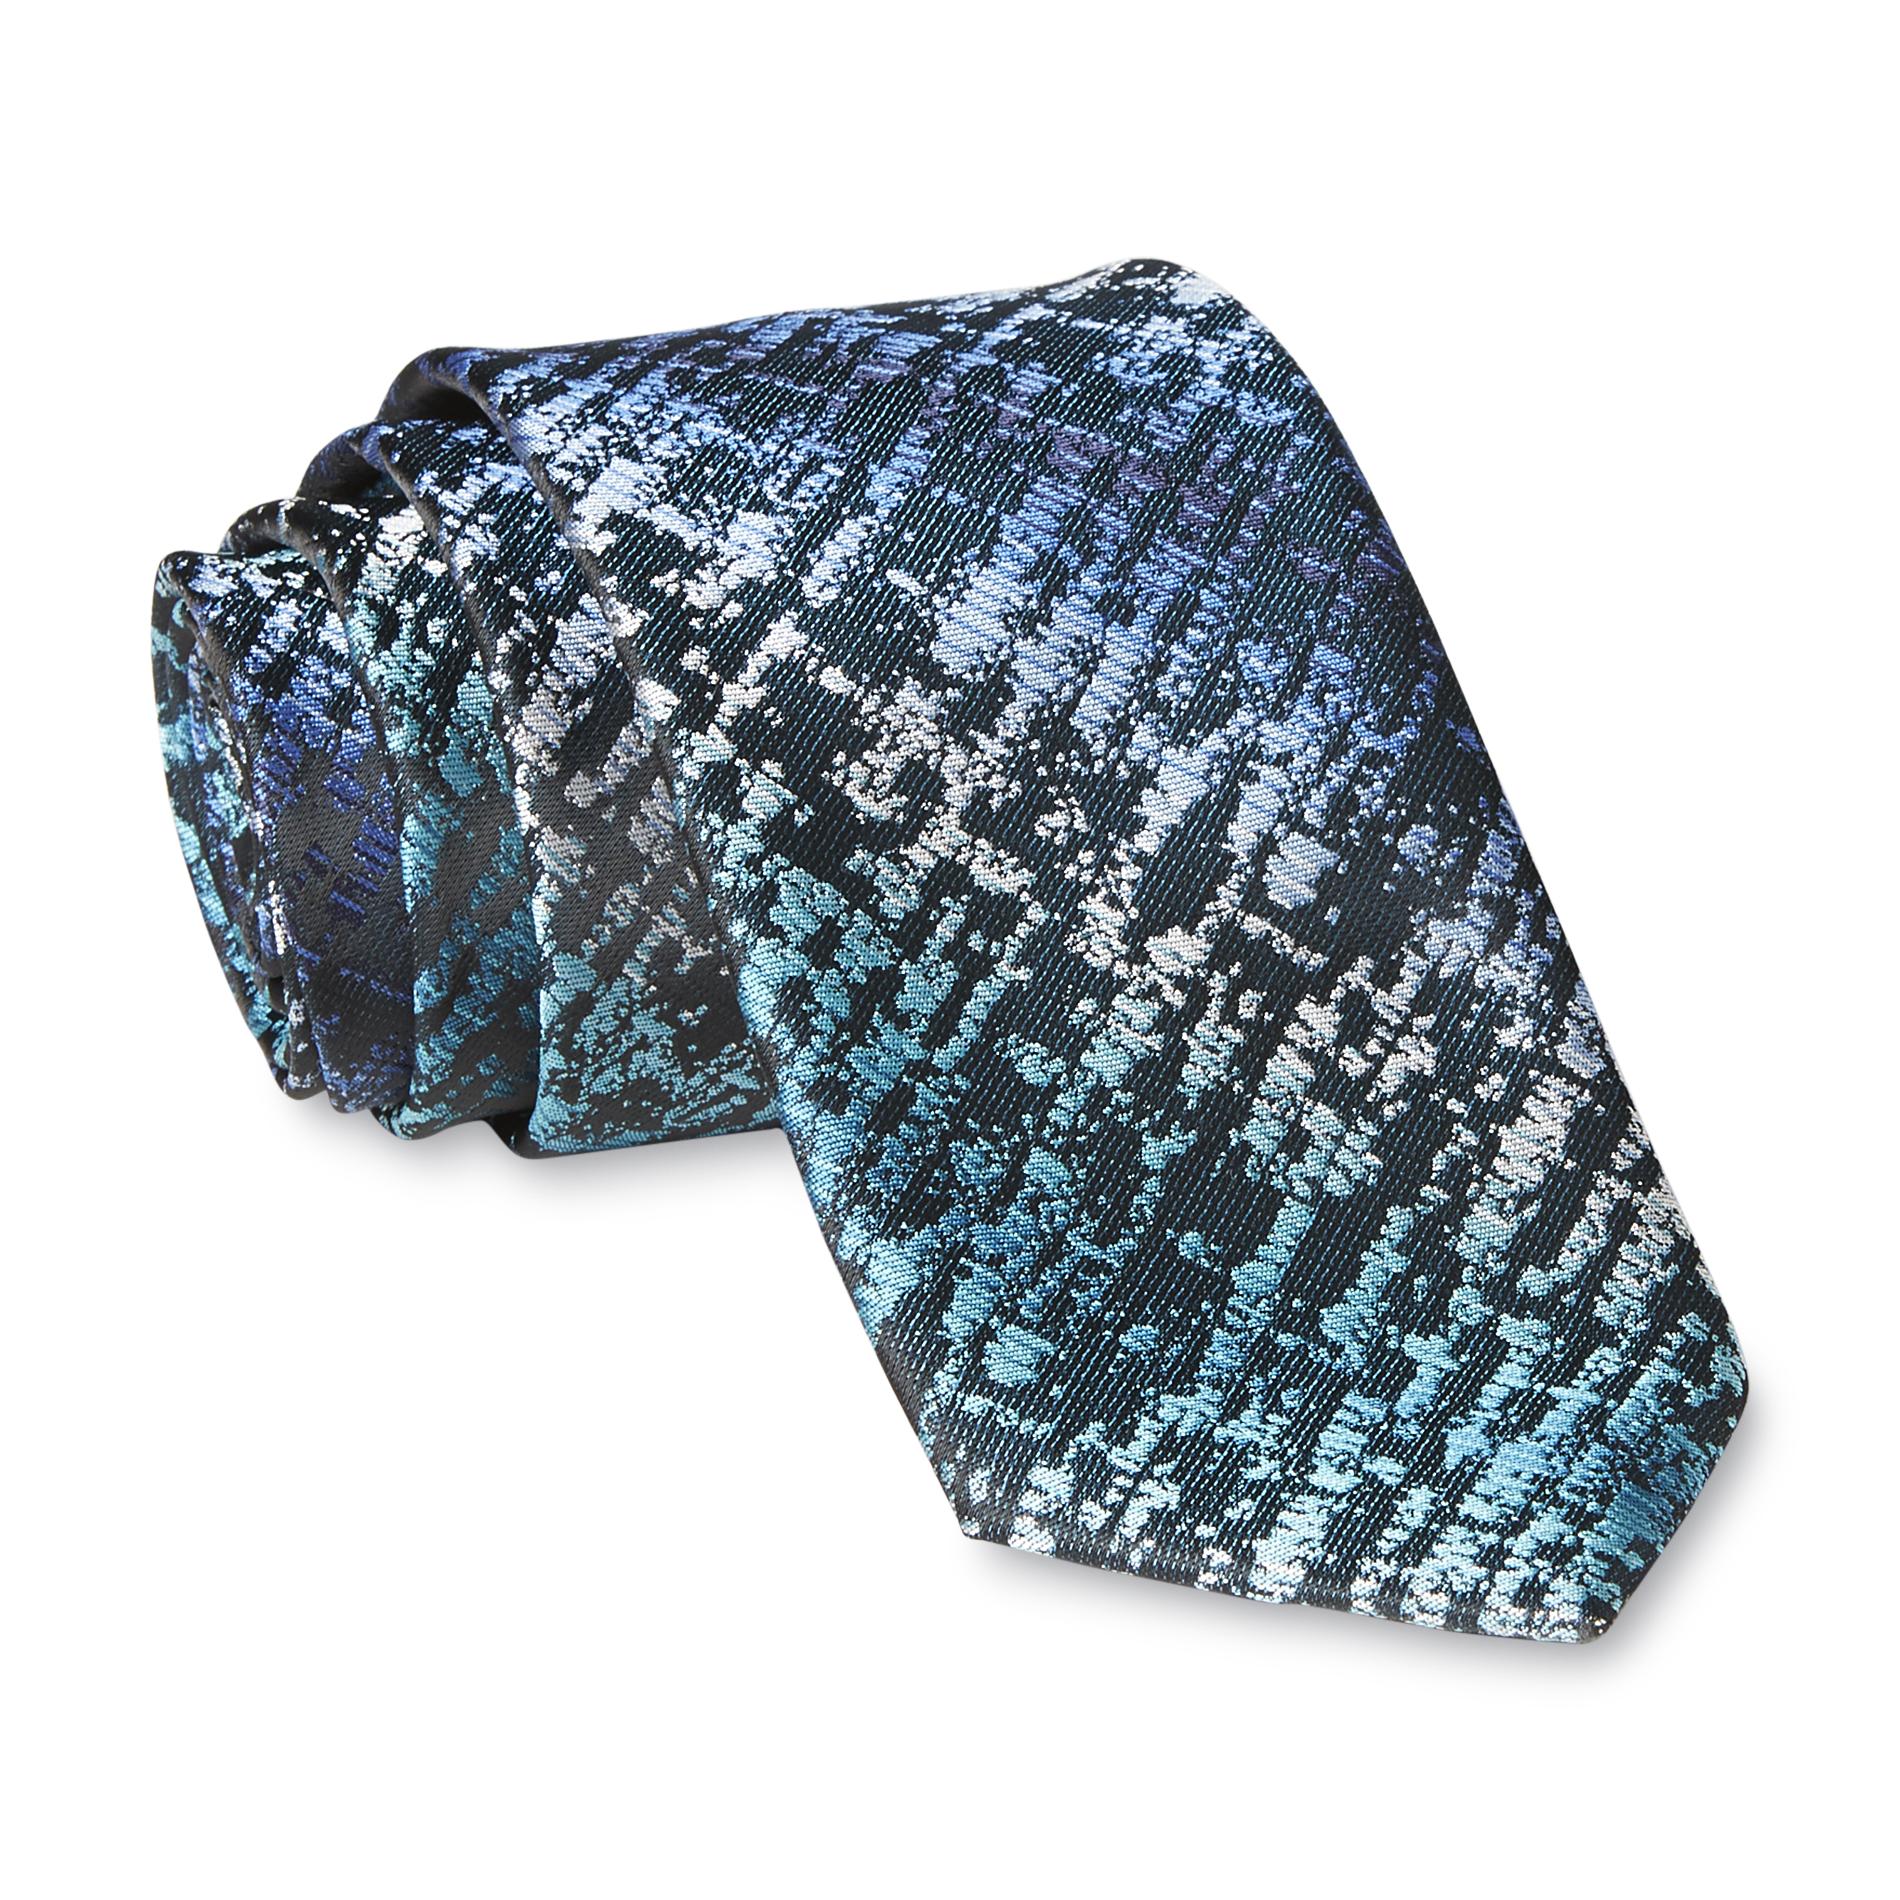 Structure Men's Necktie & Tie Clip - Abstract